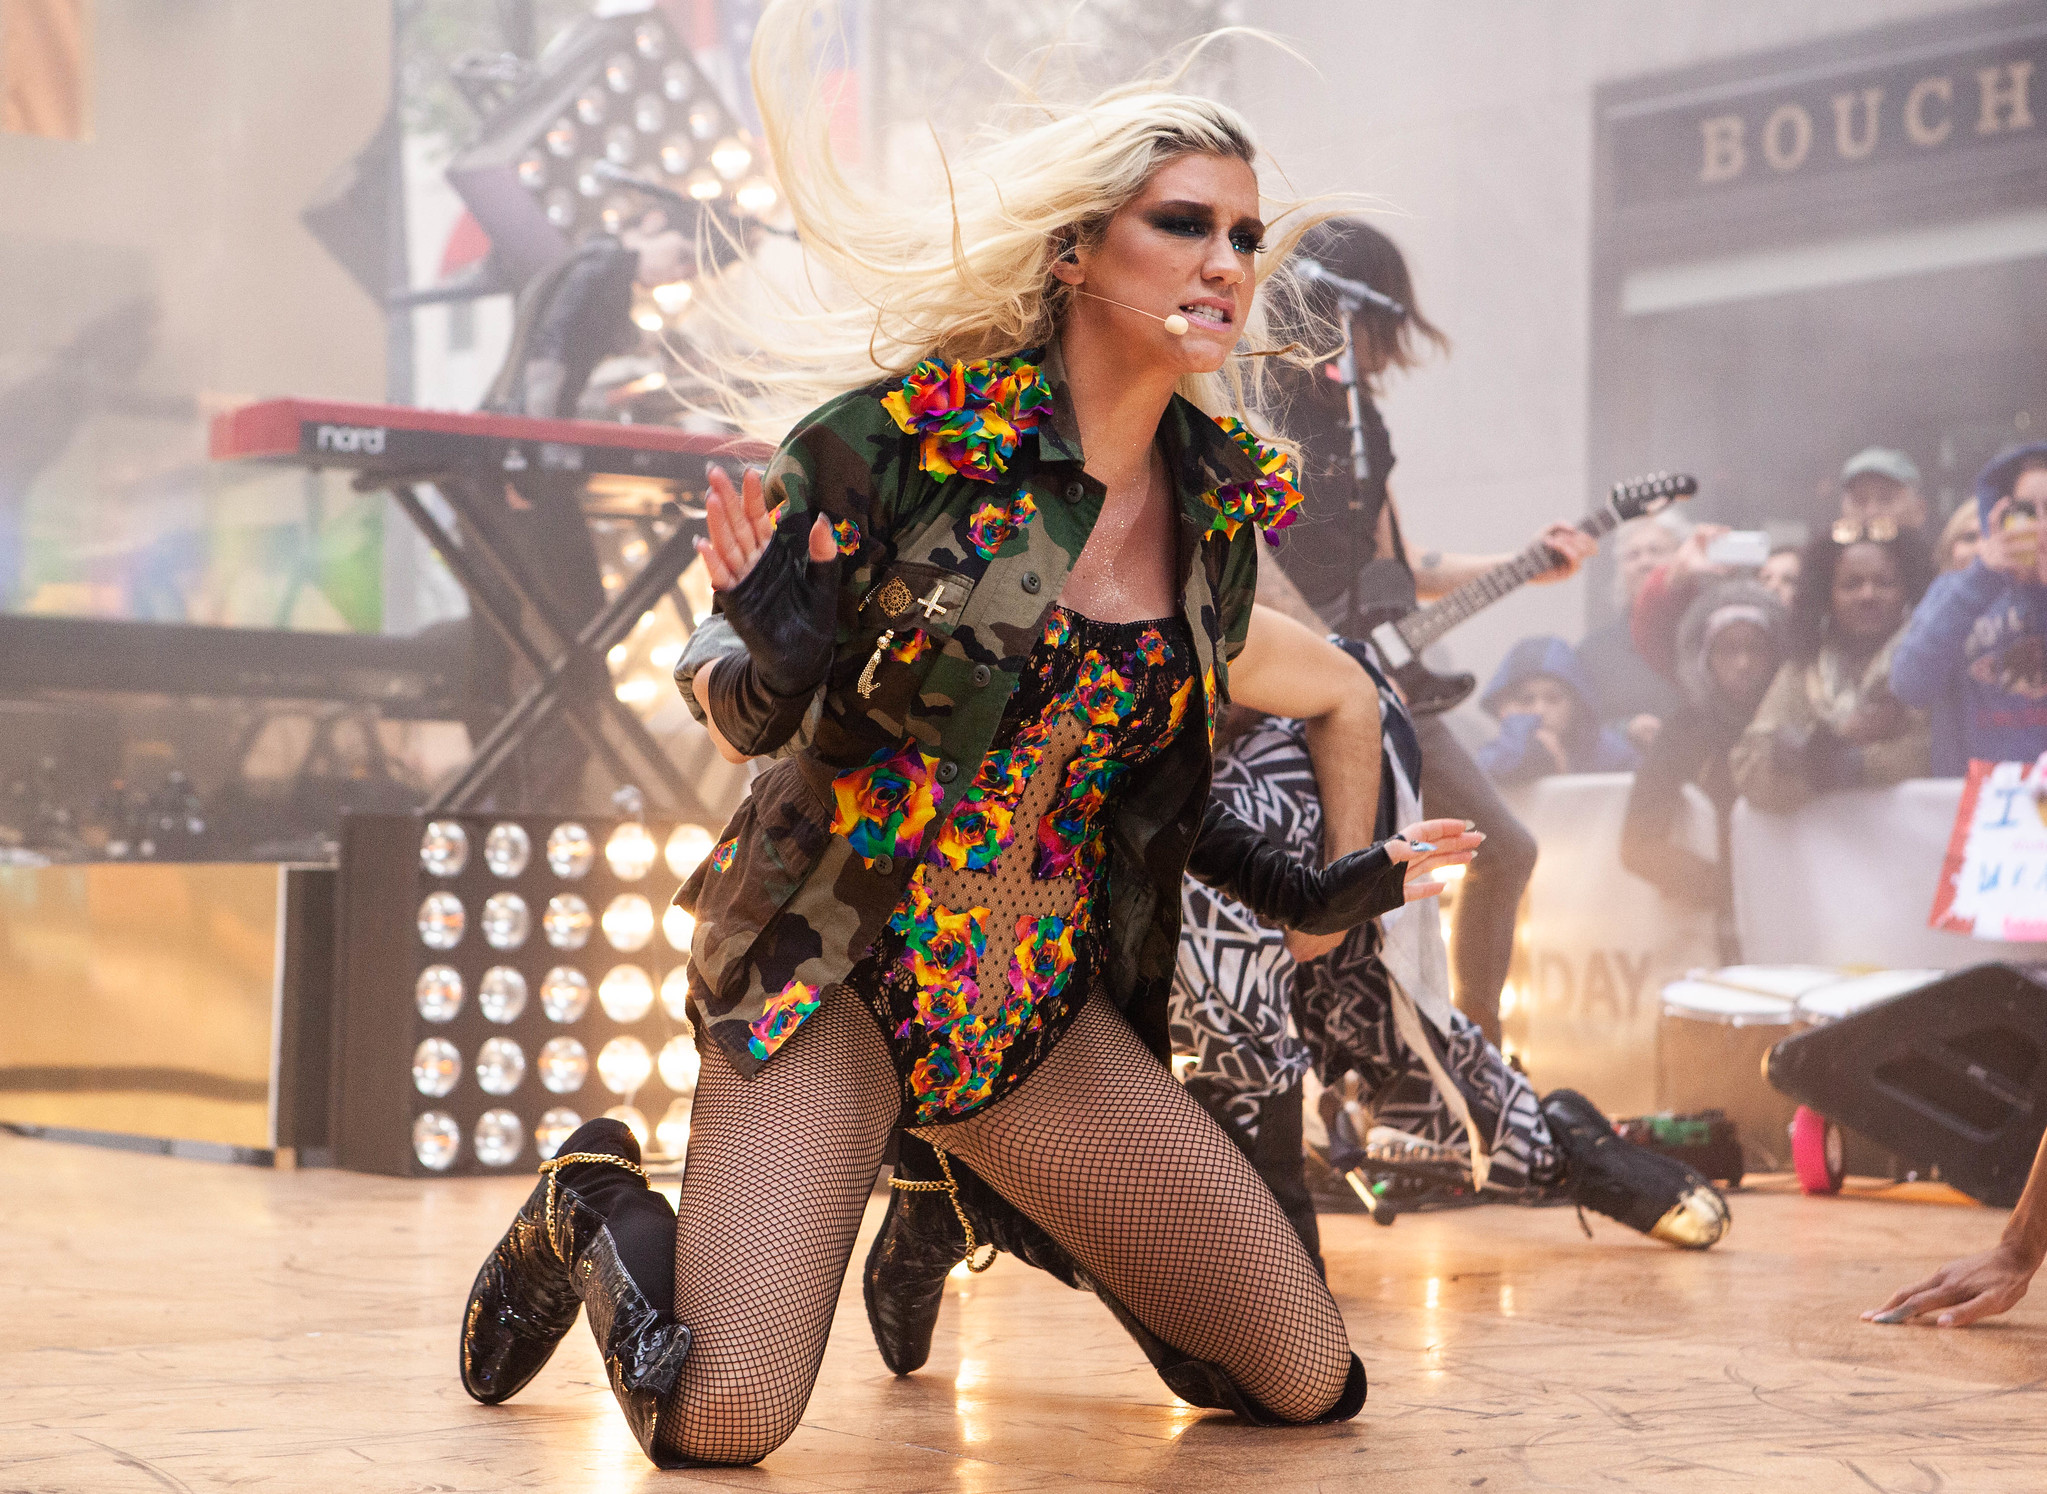 Pop star Kesha performing on stage